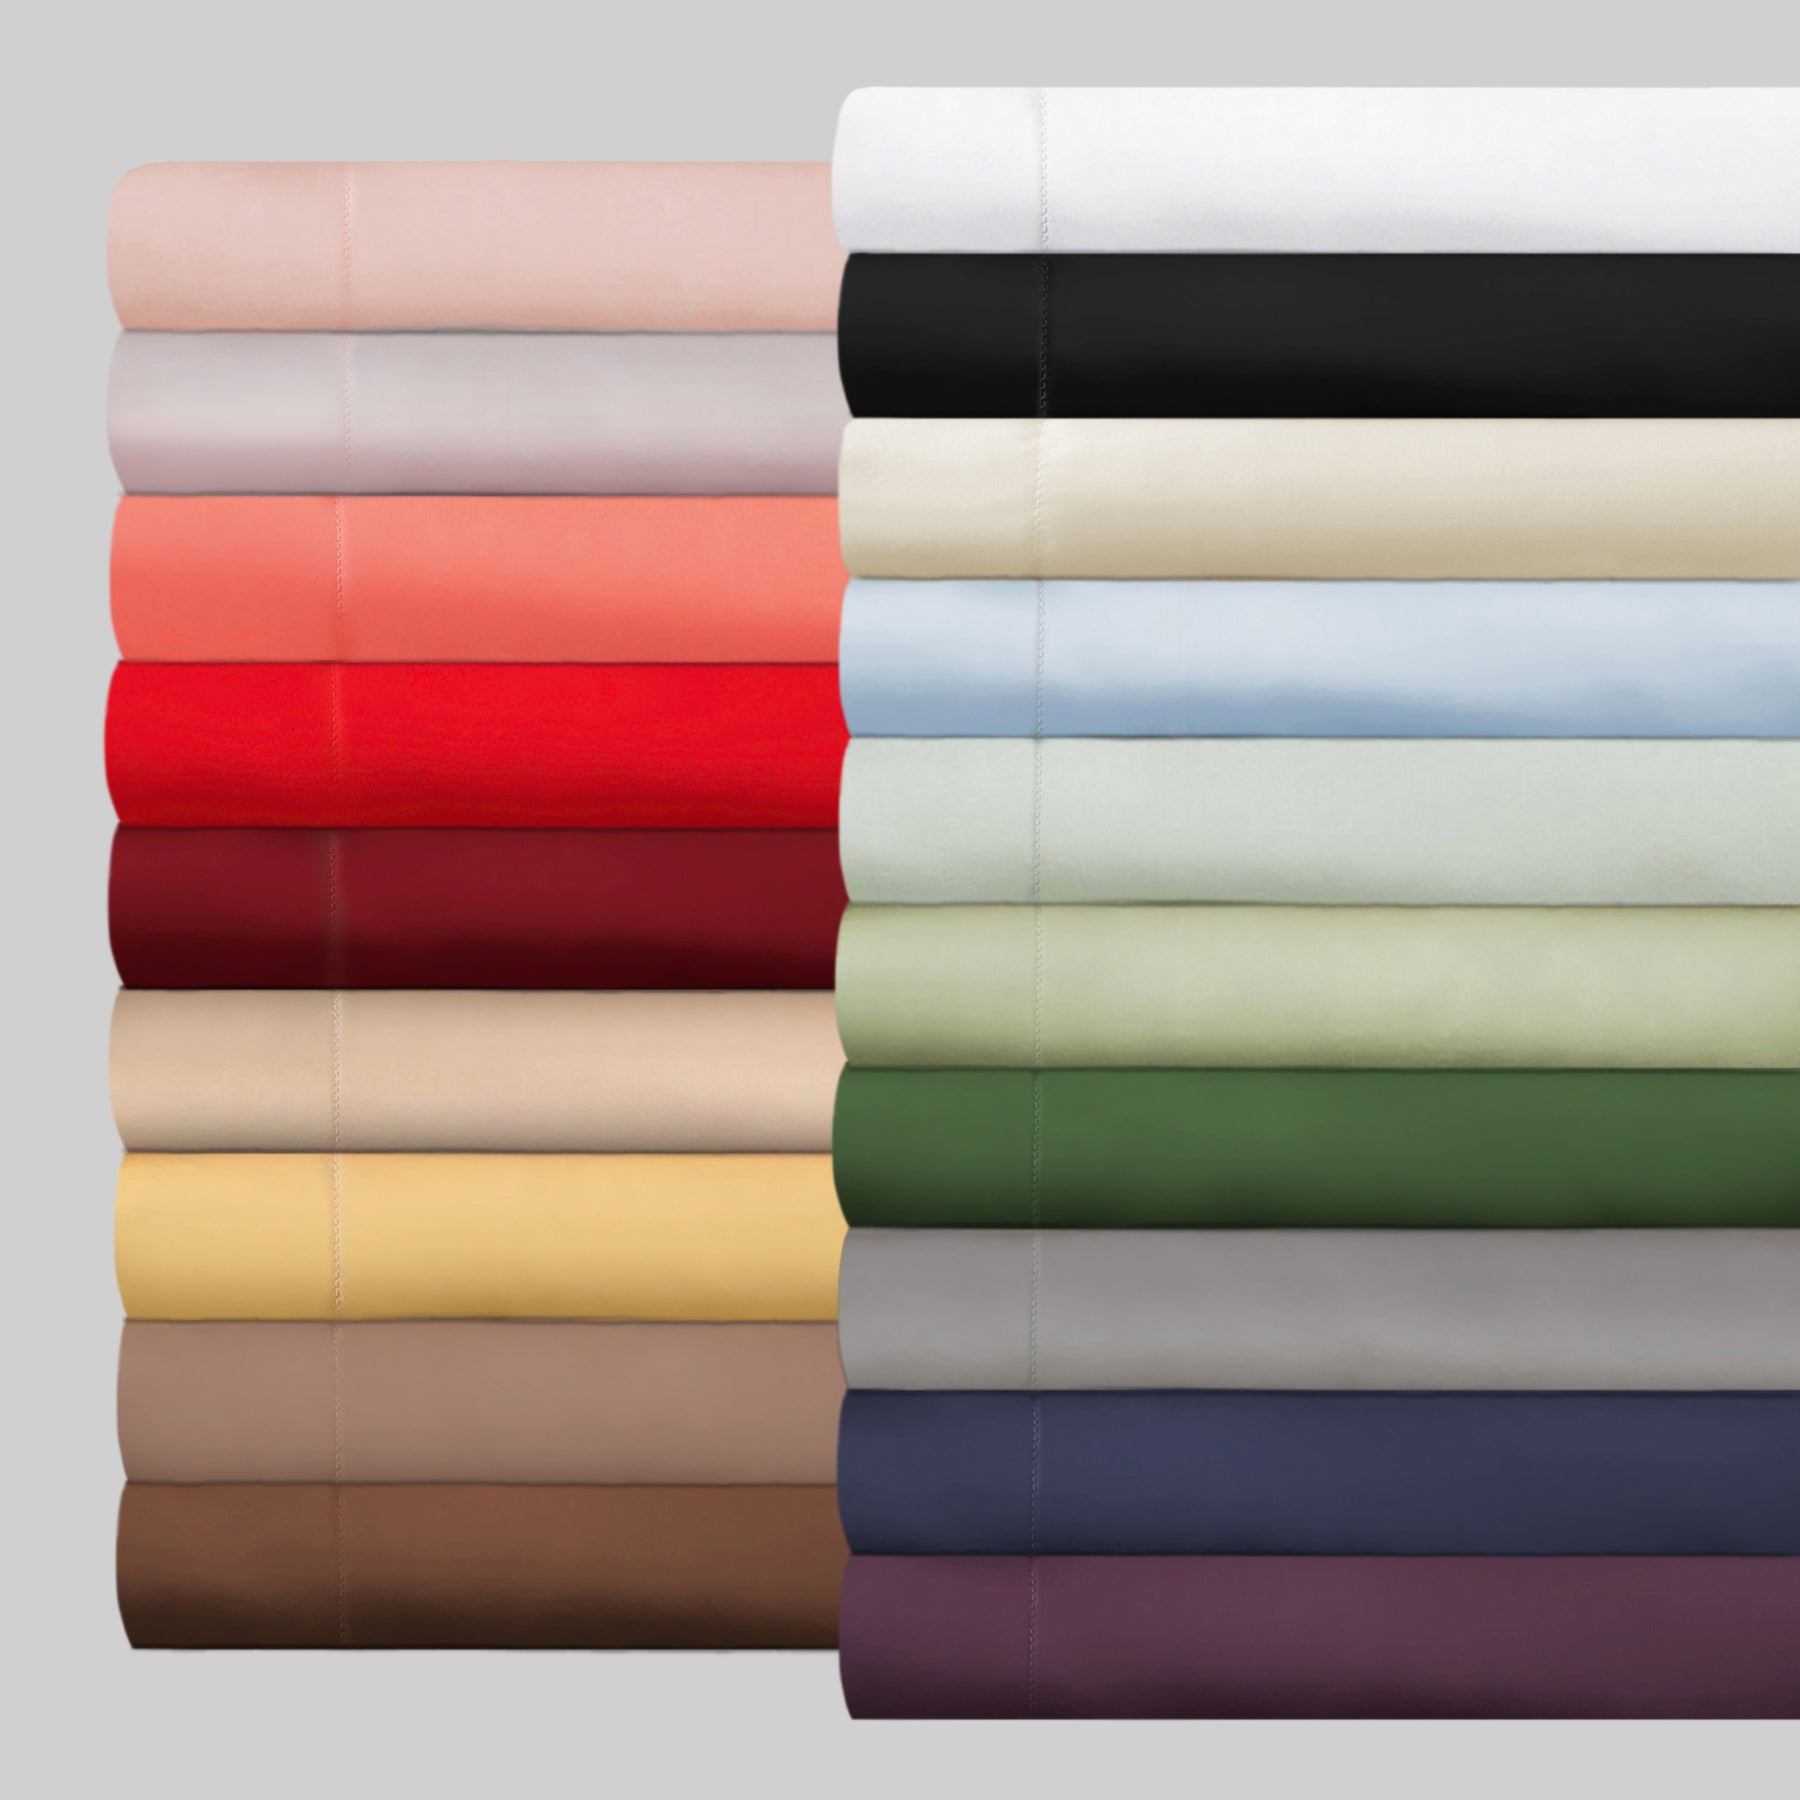 Superior Egyptian Cotton 300 Thread Count Solid Pillowcase Set - White